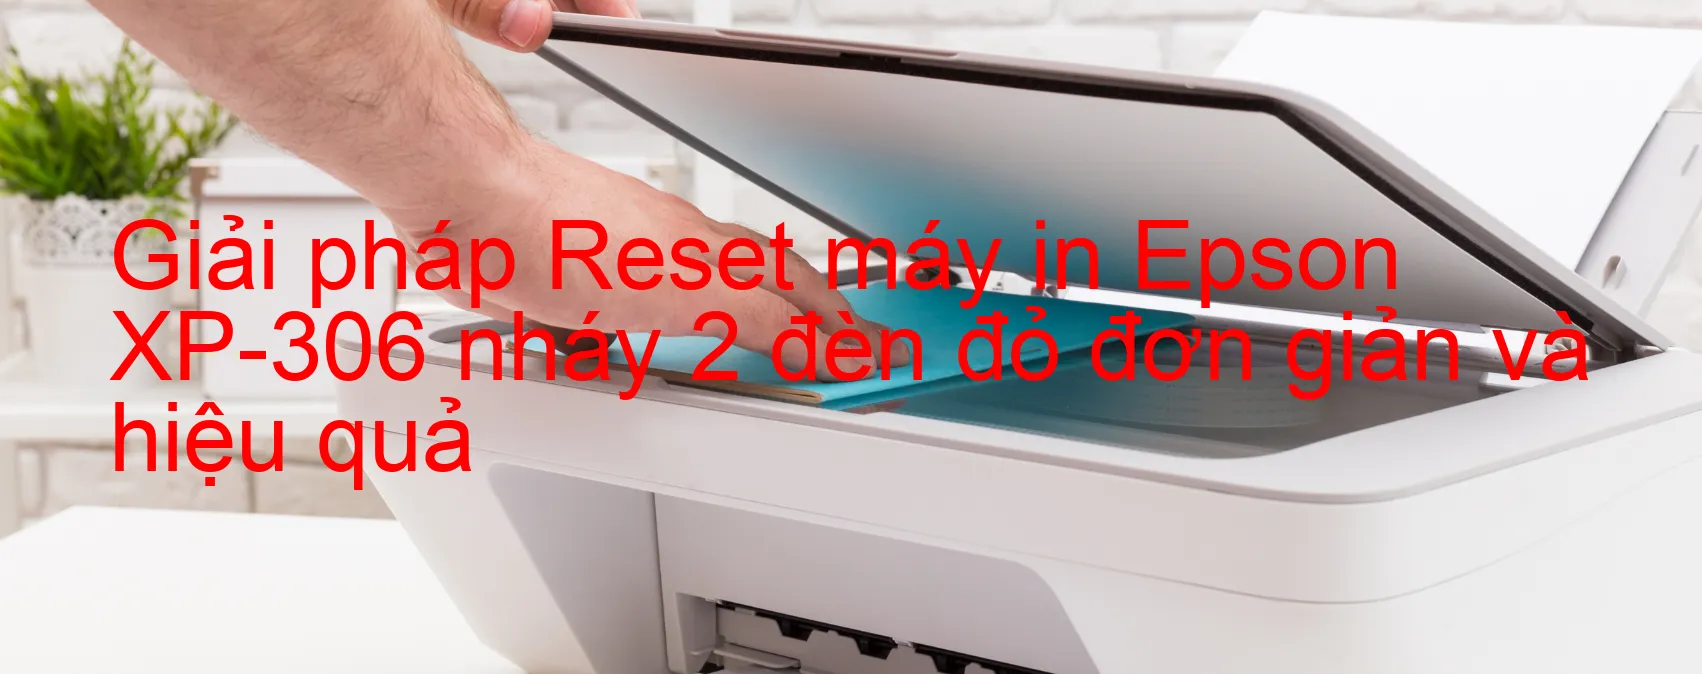 Reset máy in Epson XP-306 nháy 2 đèn đỏ: Cách khắc phục lỗi một cách đơn giản và hiệu quả